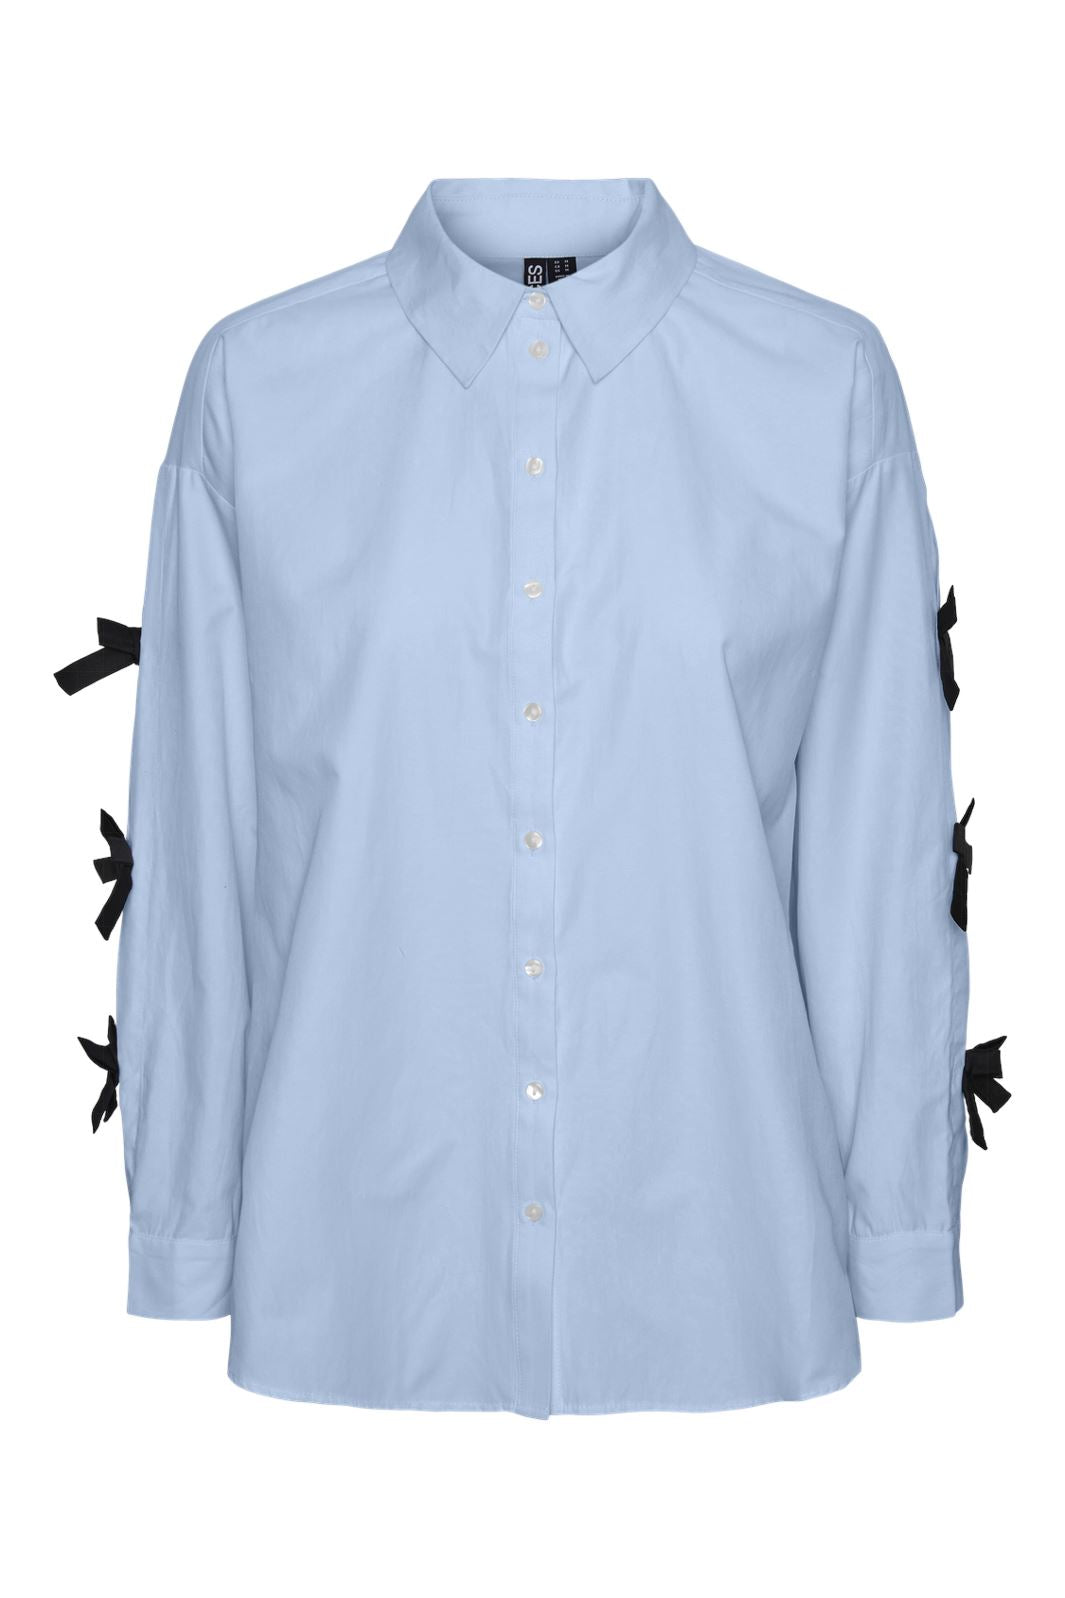 Pieces - Pcbell Ls Shirt Jit - 4694910 Nantucket Breeze Black Bows